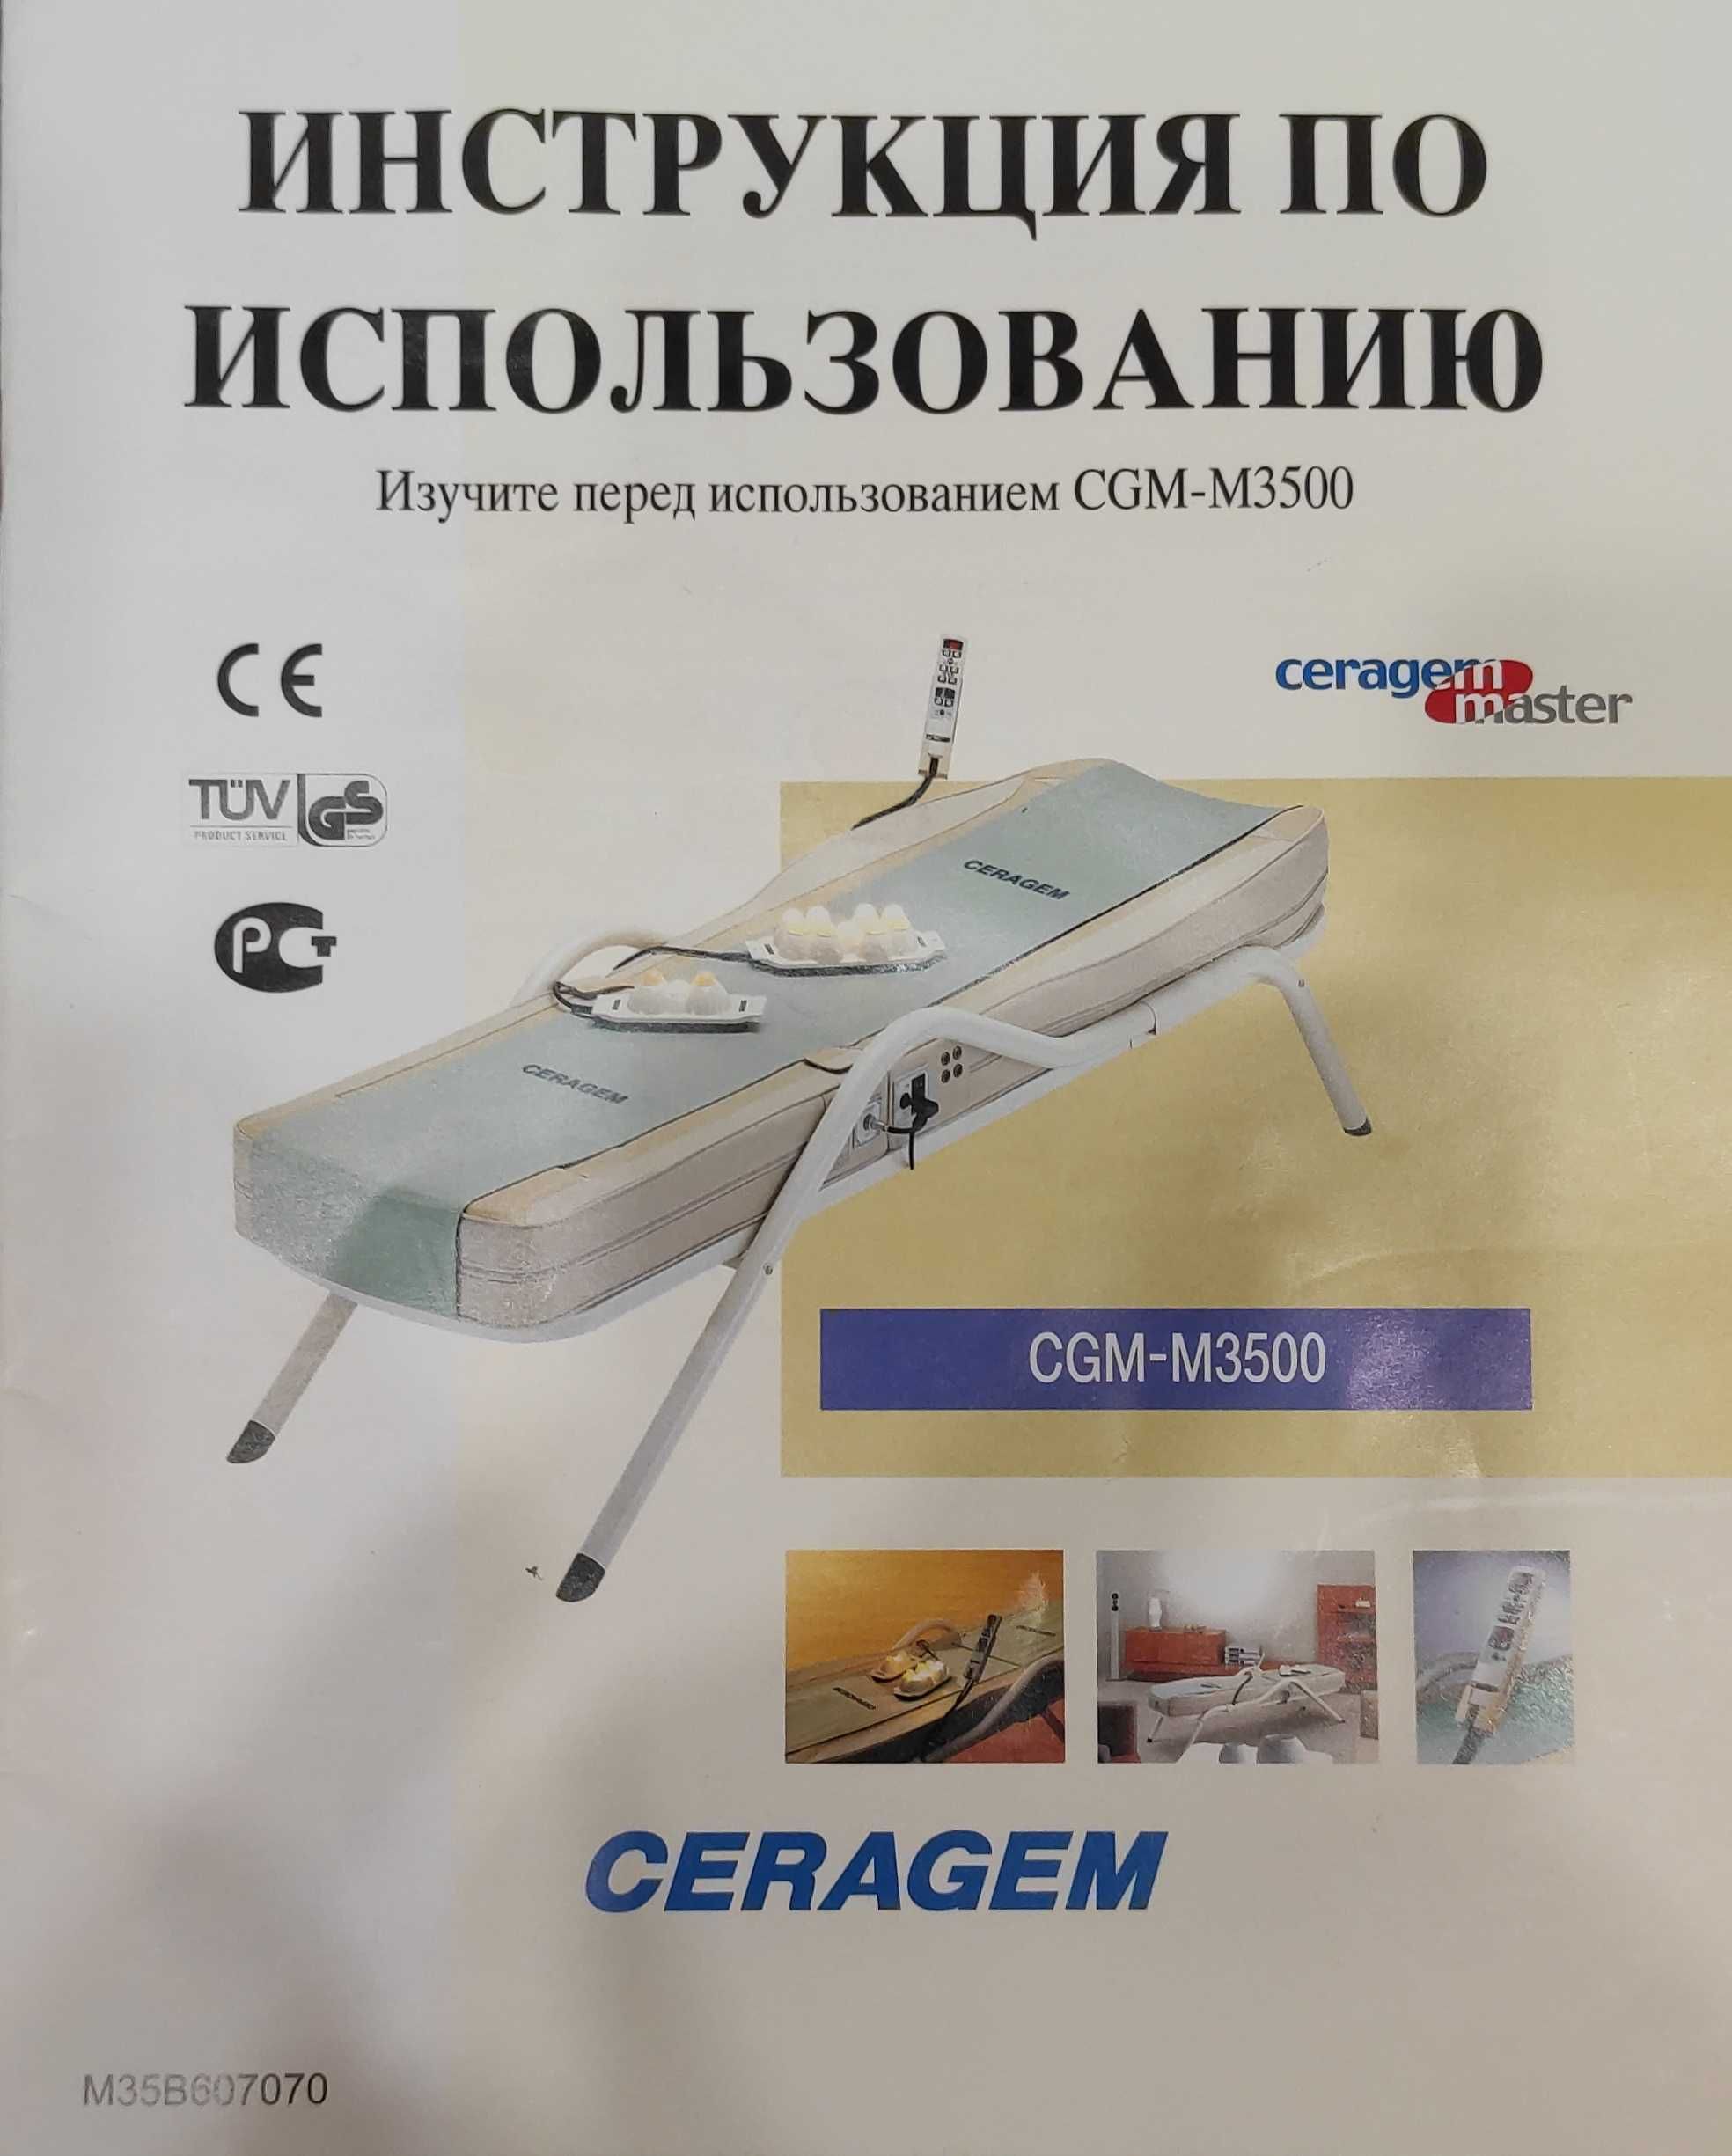 Продается массажная кровать Ceragem (Серагем)